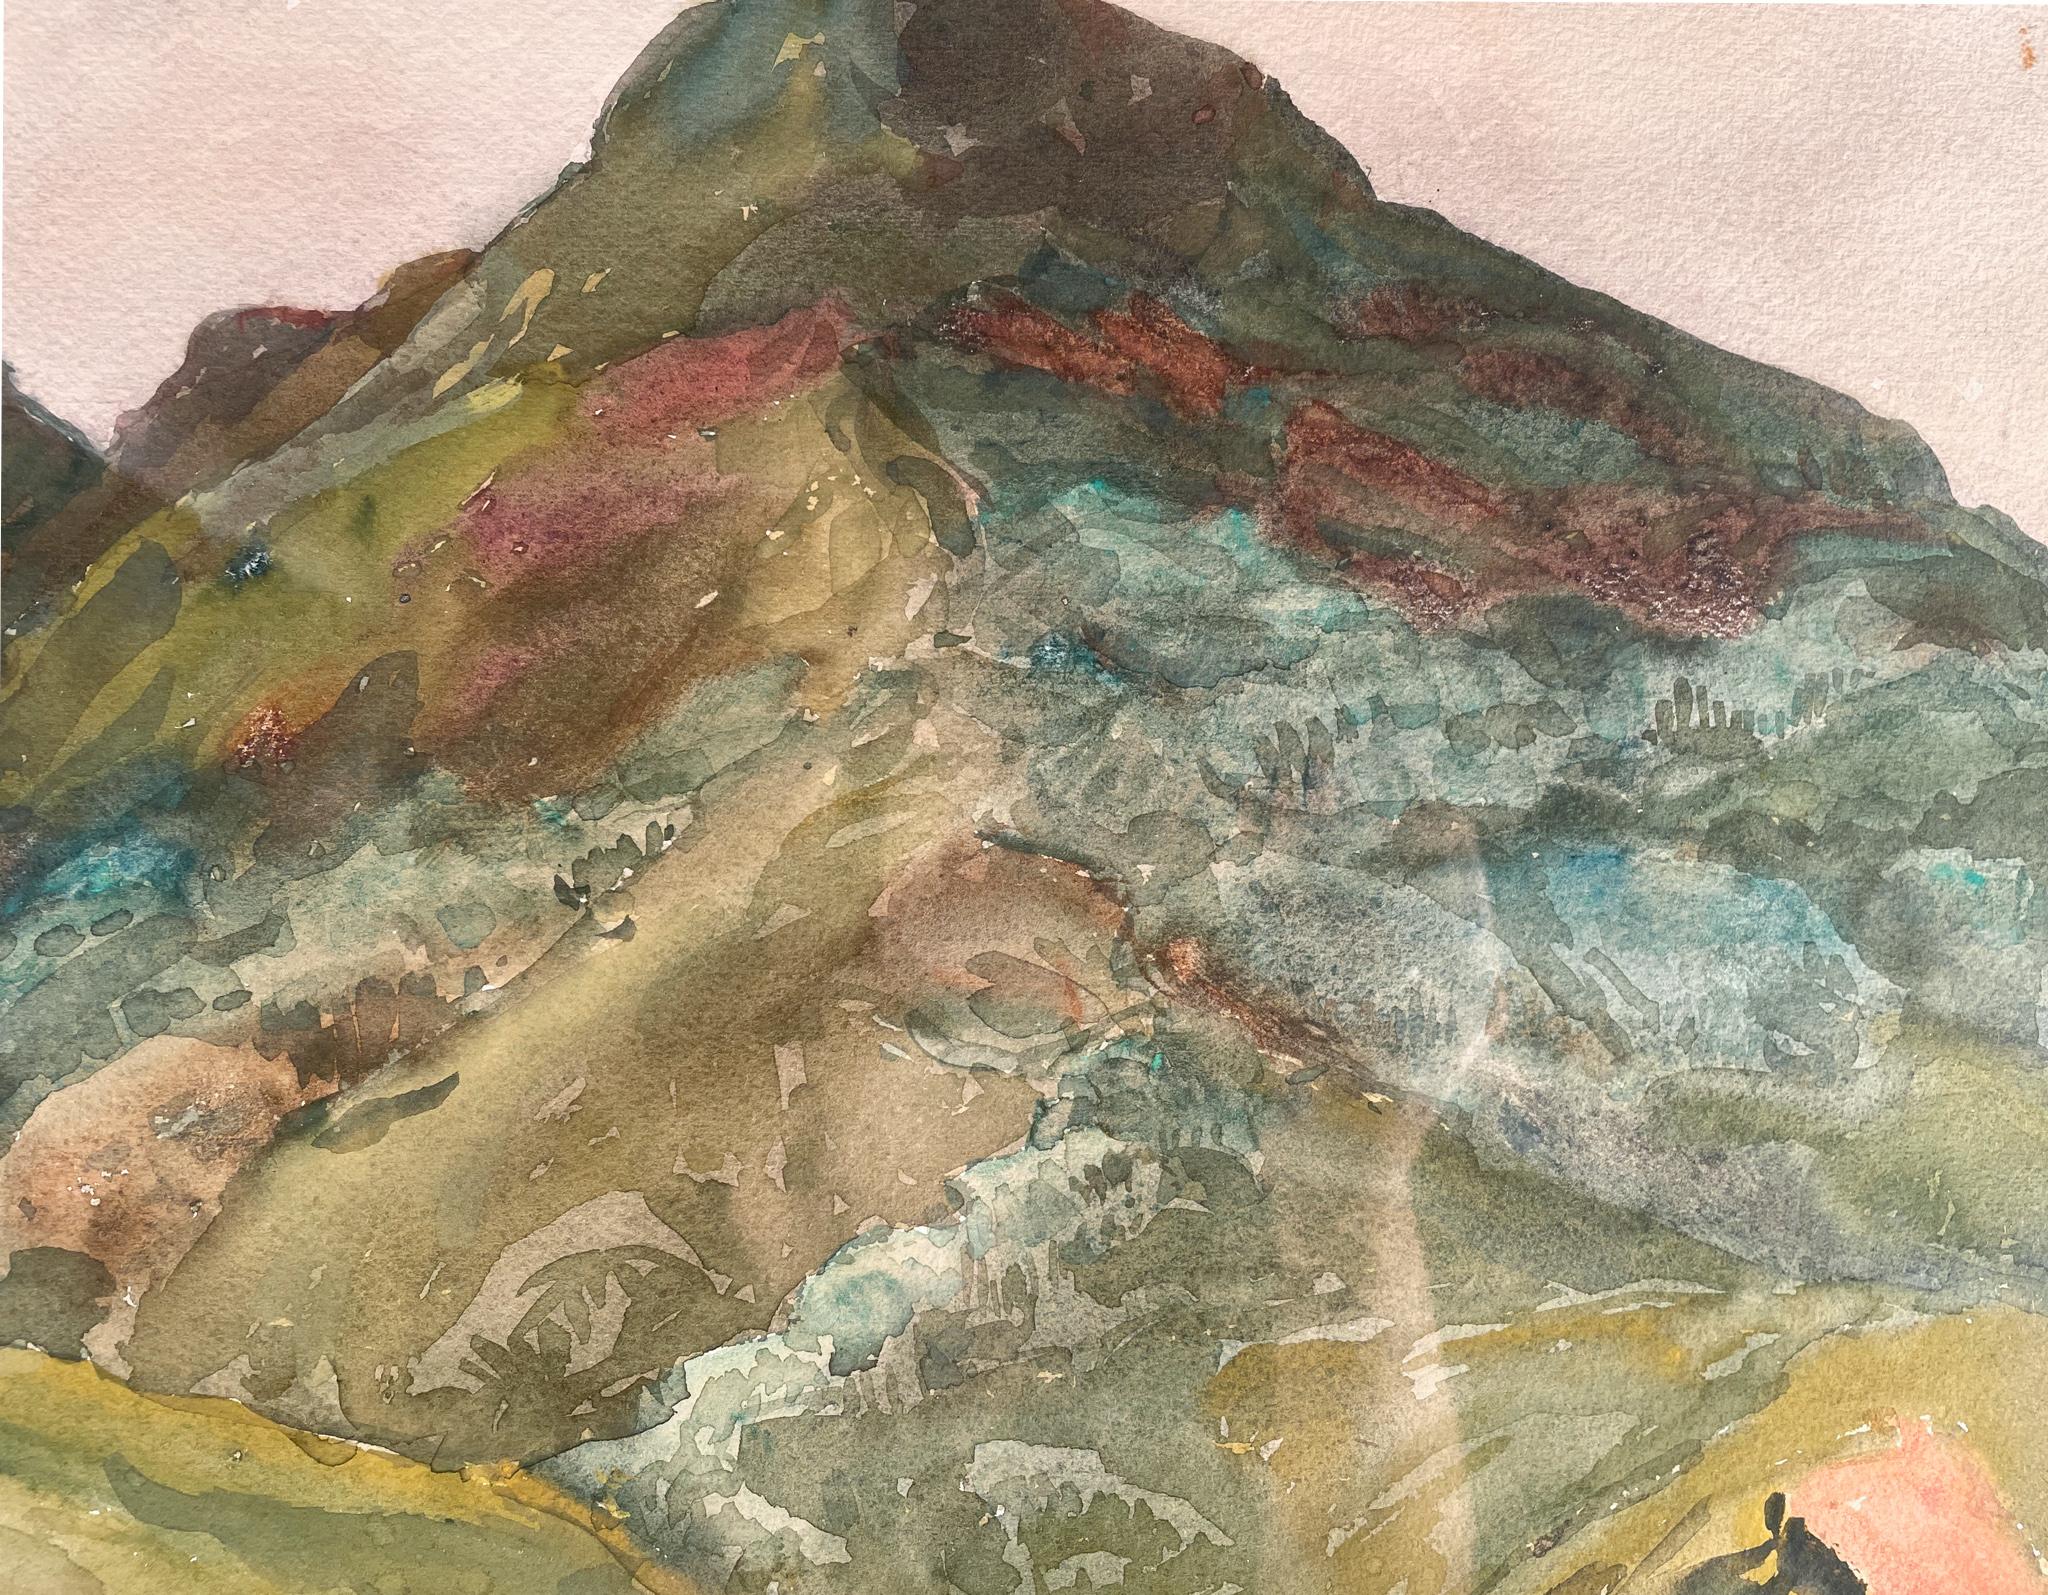 Berglandschaft in New Mexico von Joseph Henry Sharp (1859-1953)
Aquarell auf Papier
15 ¾ x 19 ½ Zoll ungerahmt (40,005 x 49,53 cm) 
23 x 26 ¾ Zoll gerahmt (58,42 x 67,945 cm)
Signiert unten rechts

Beschreibung:
In diesem Aquarell erschafft Sharp